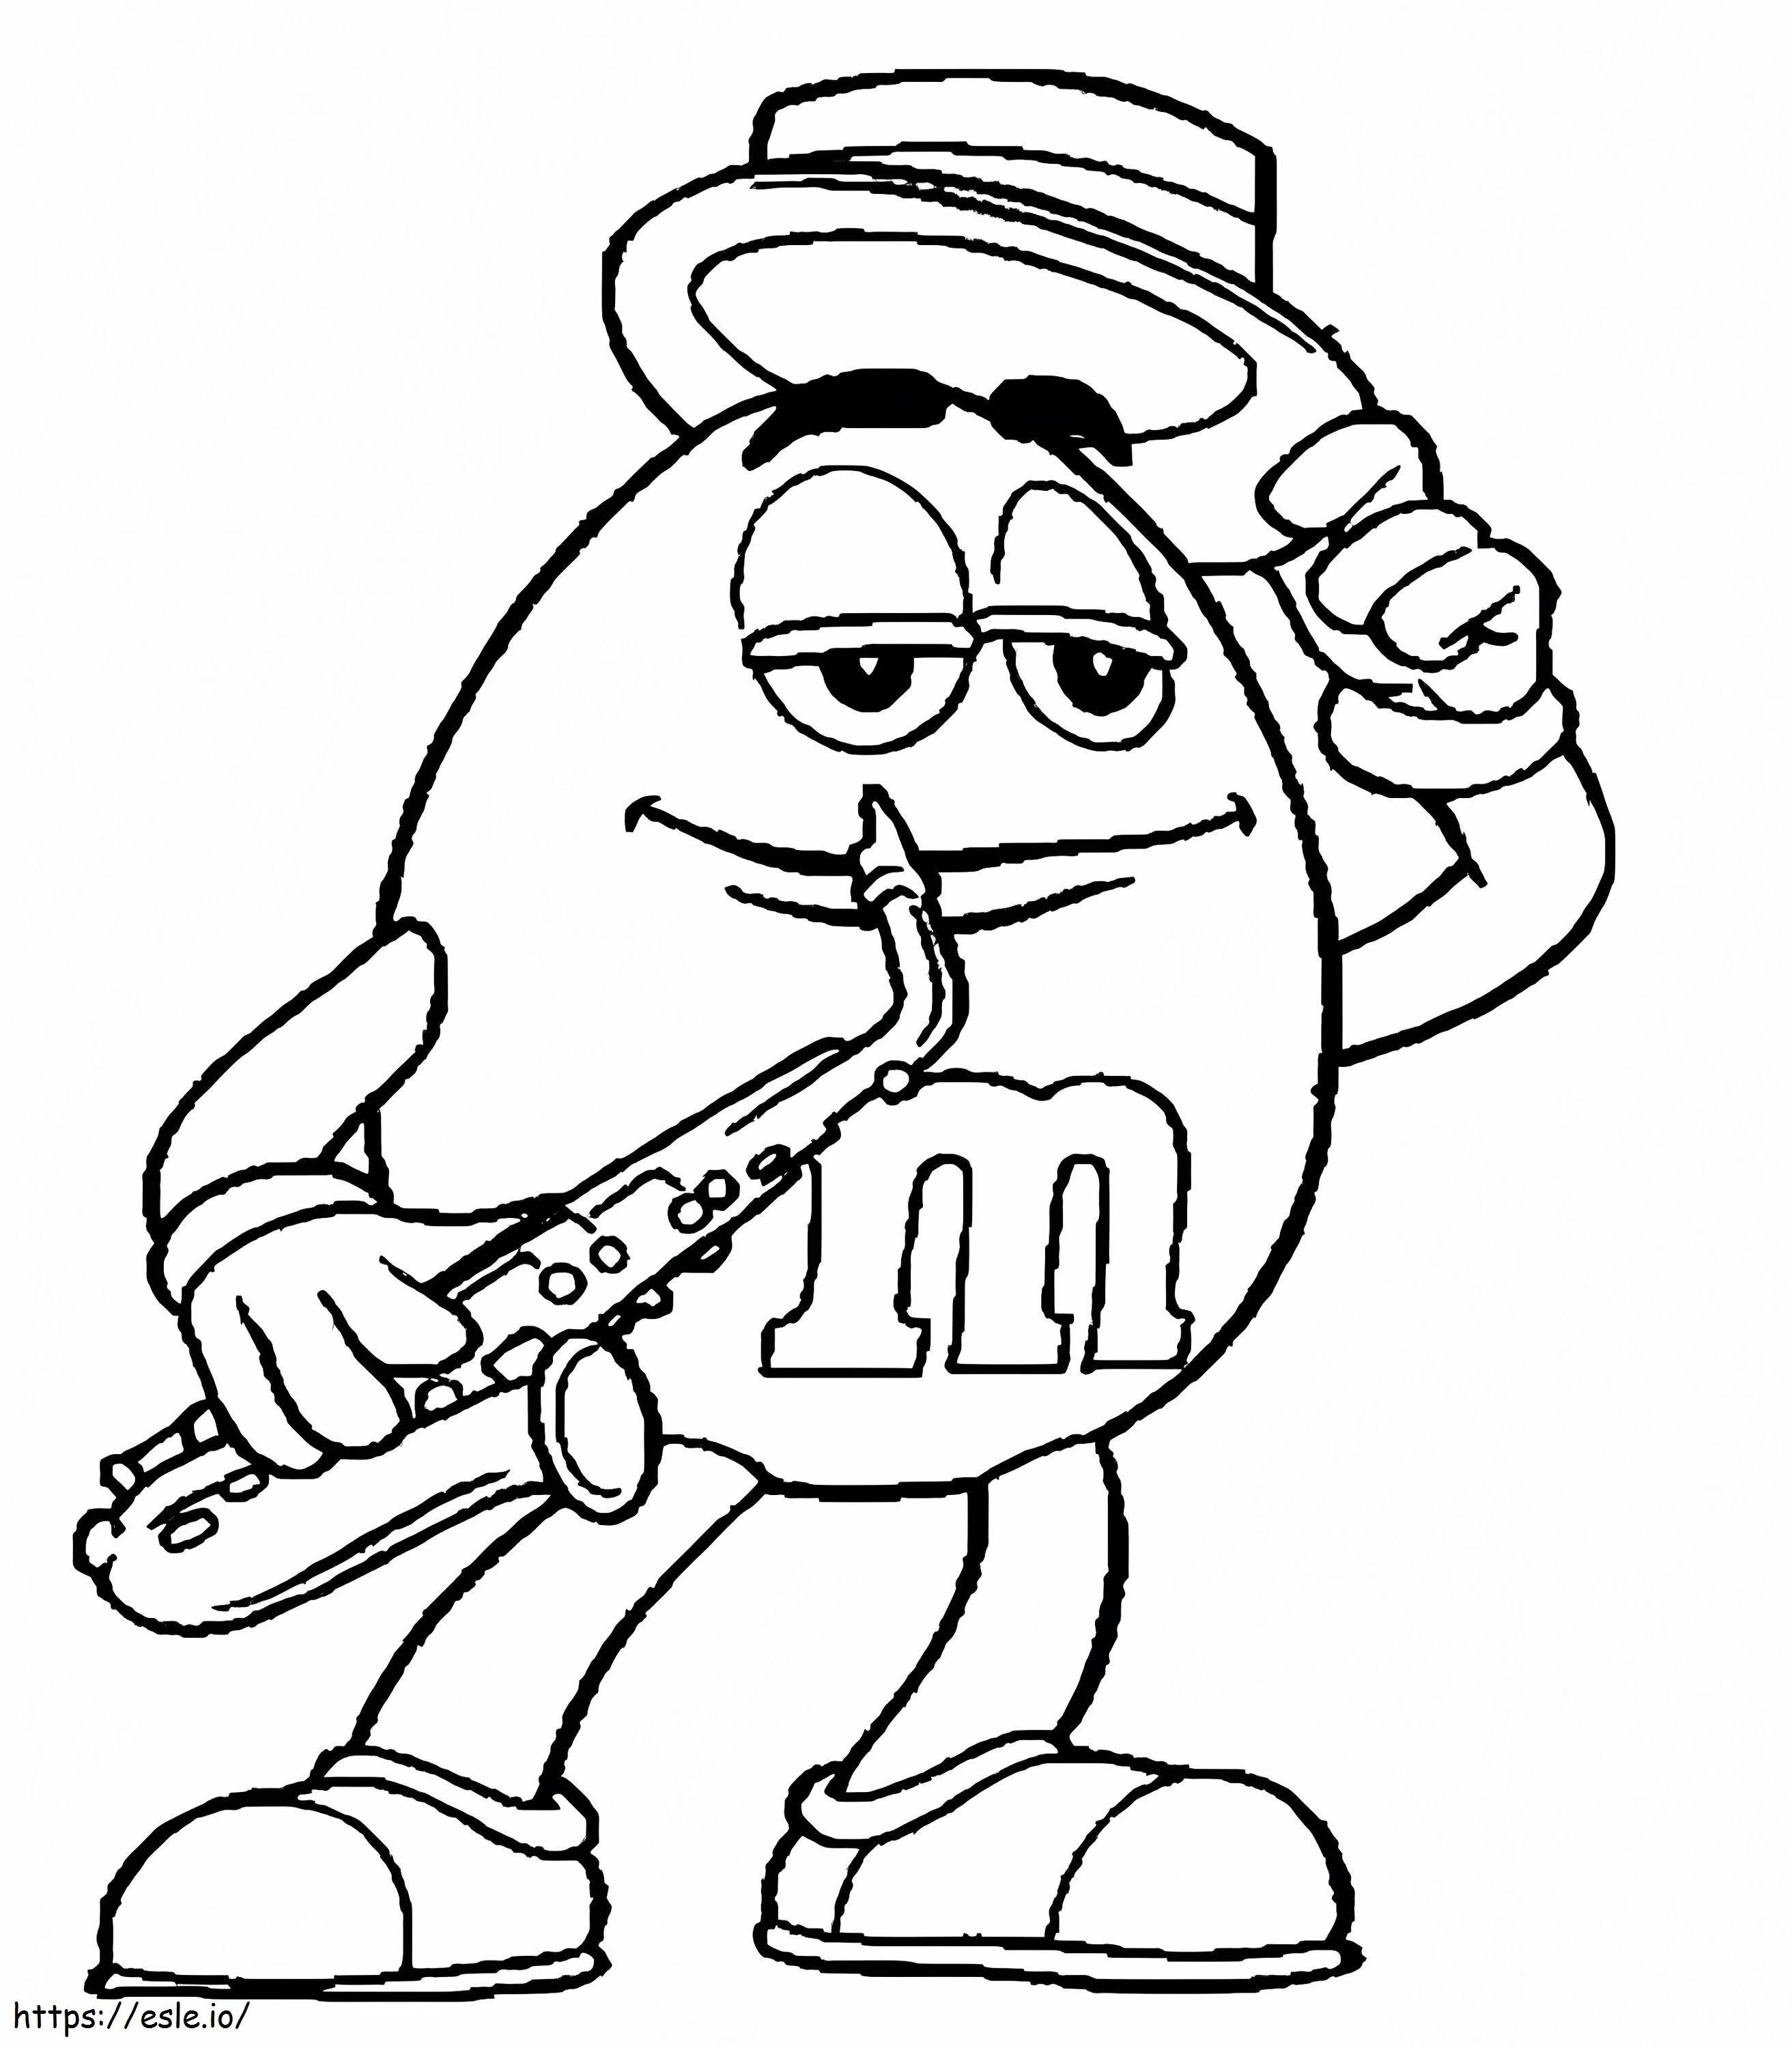 Coloriage Mm jouant du saxophone à imprimer dessin